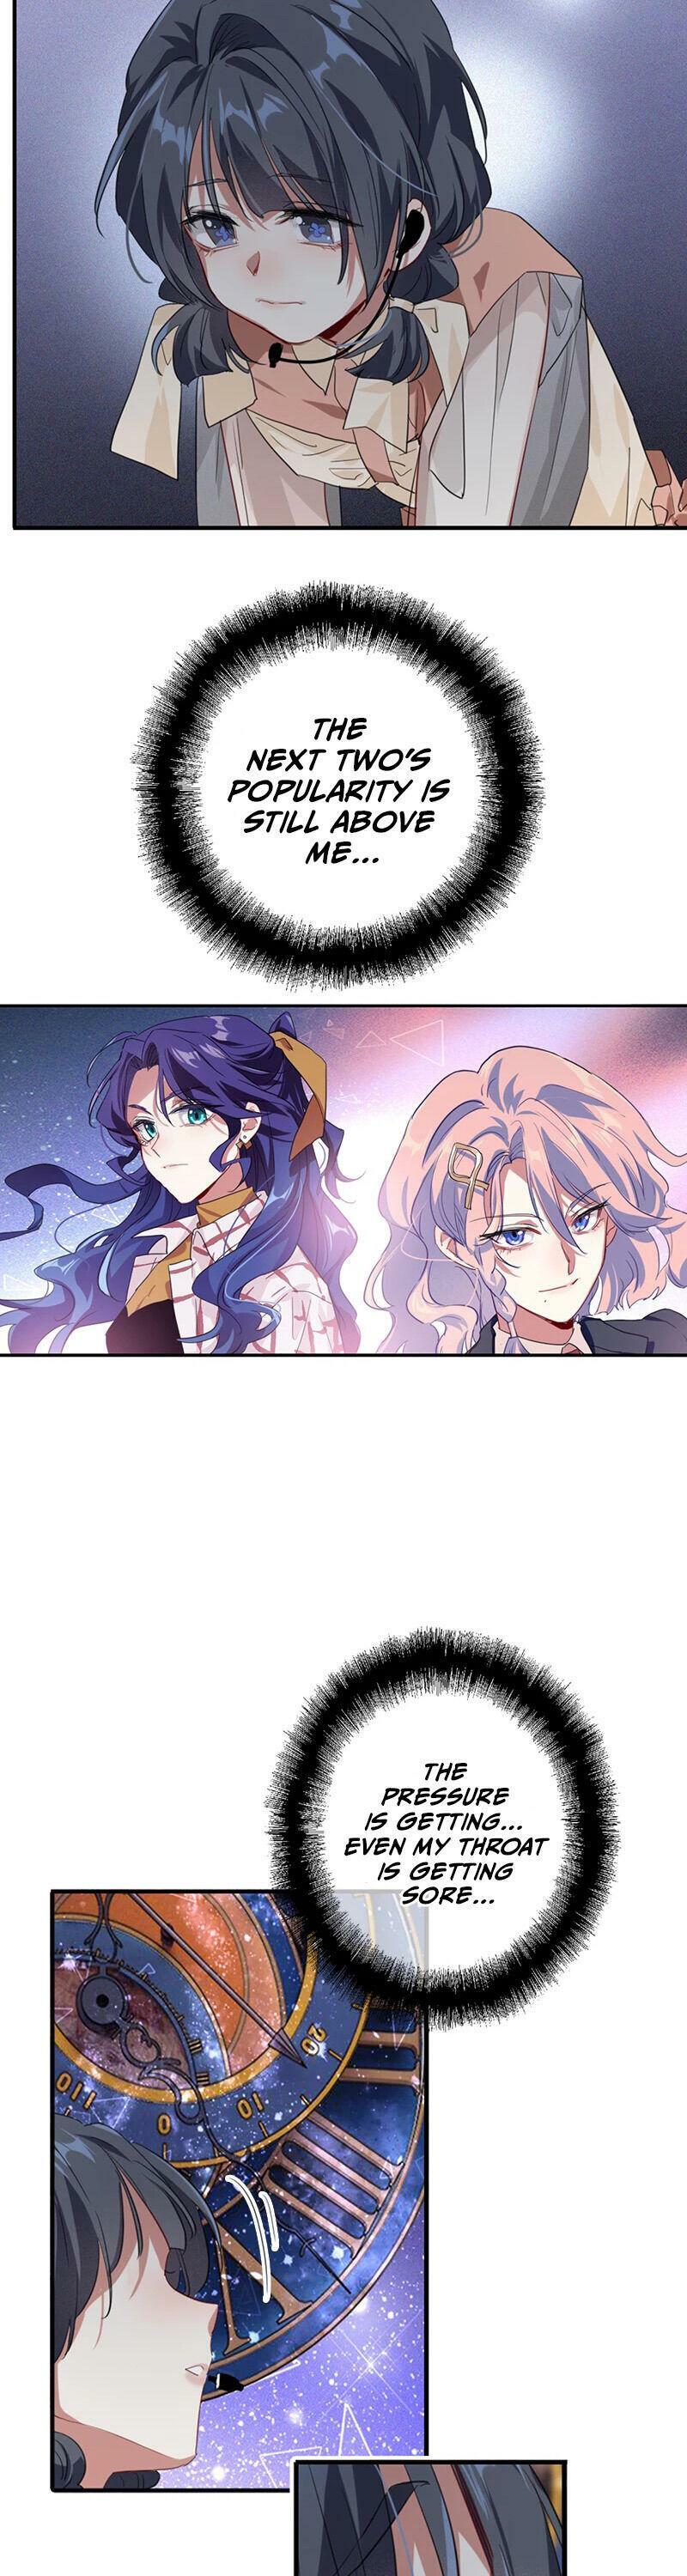 Star Dream Idol Project Chapter 281 page 4 - Mangakakalot